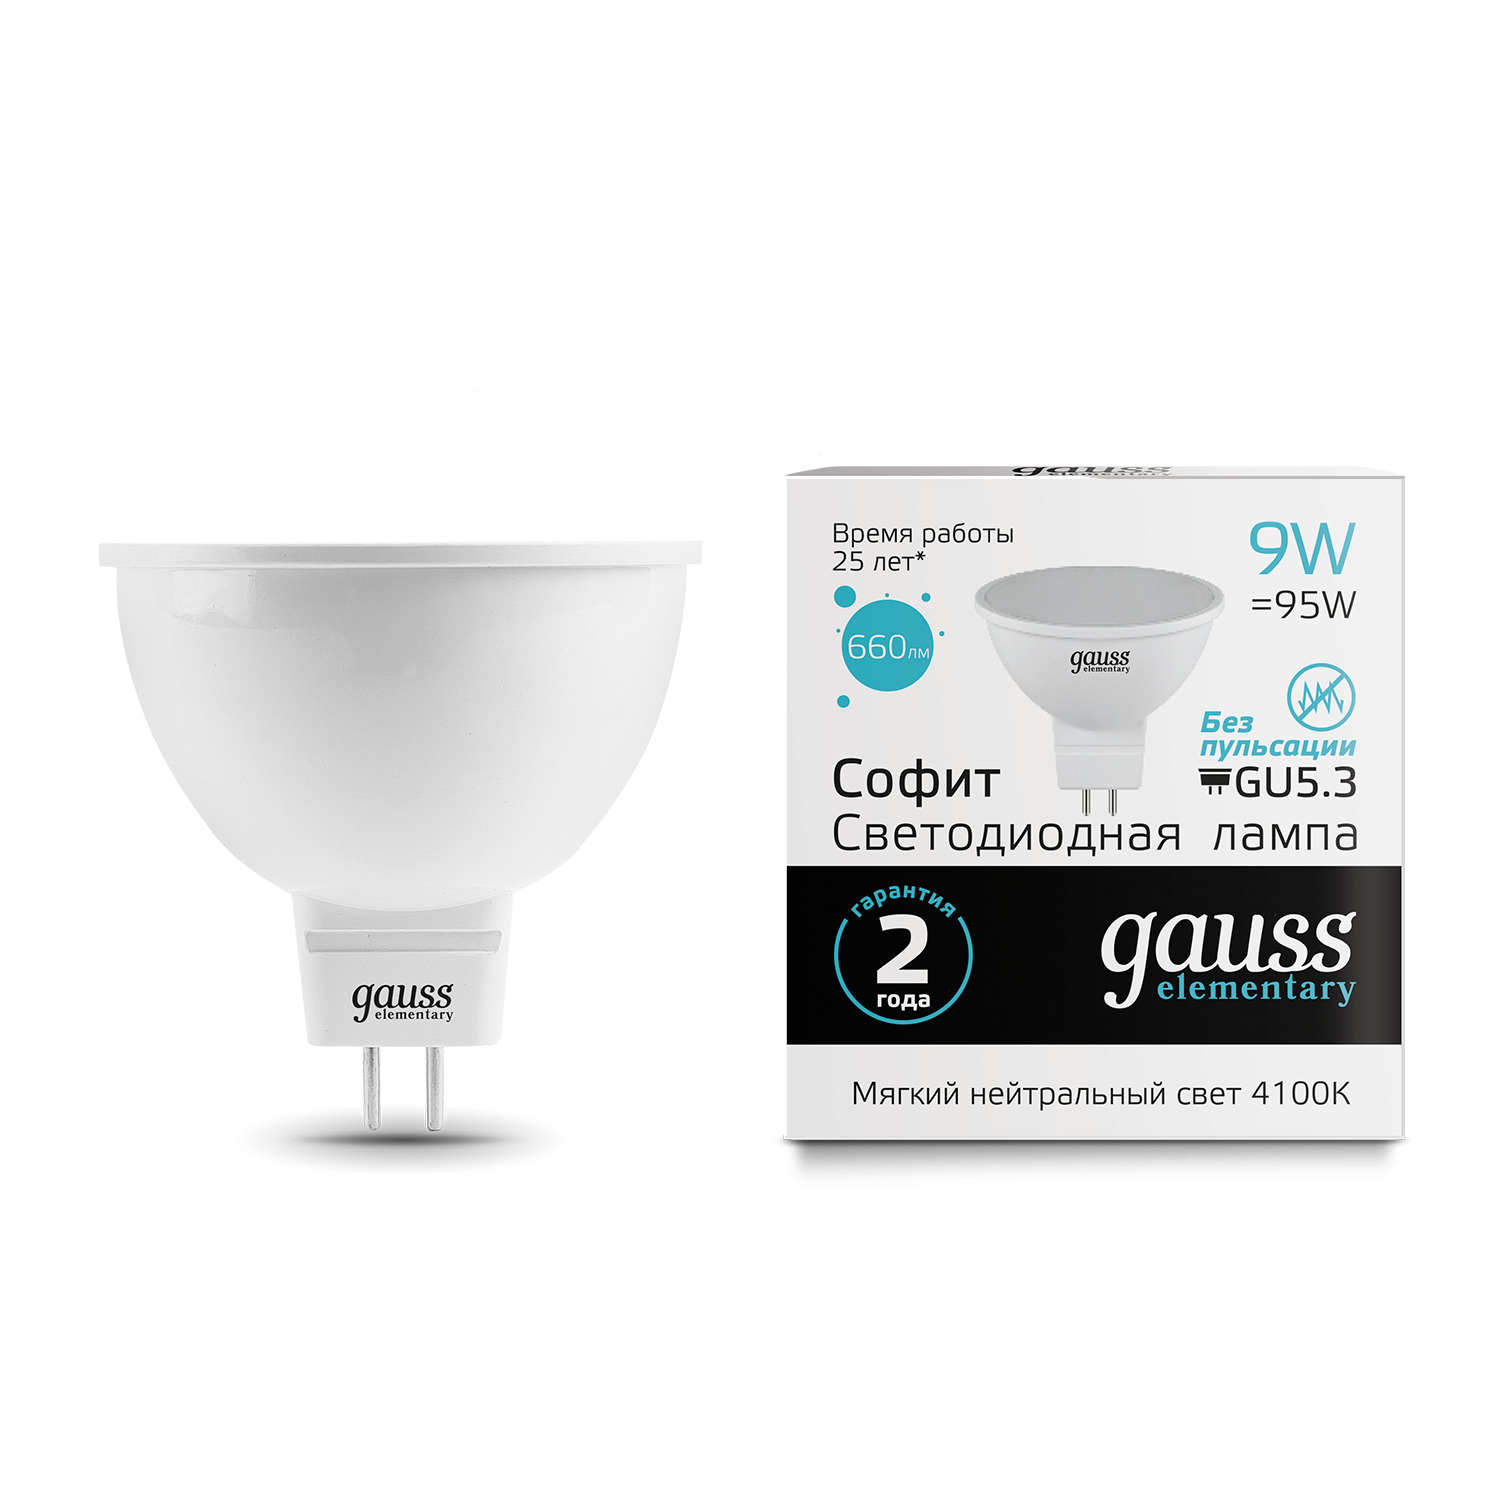 Лампа Gauss LED Elementary MR16 GU5.3 9W 4100K gauss led elementary mr16 gu5 3 9w 4100k 1 10 100